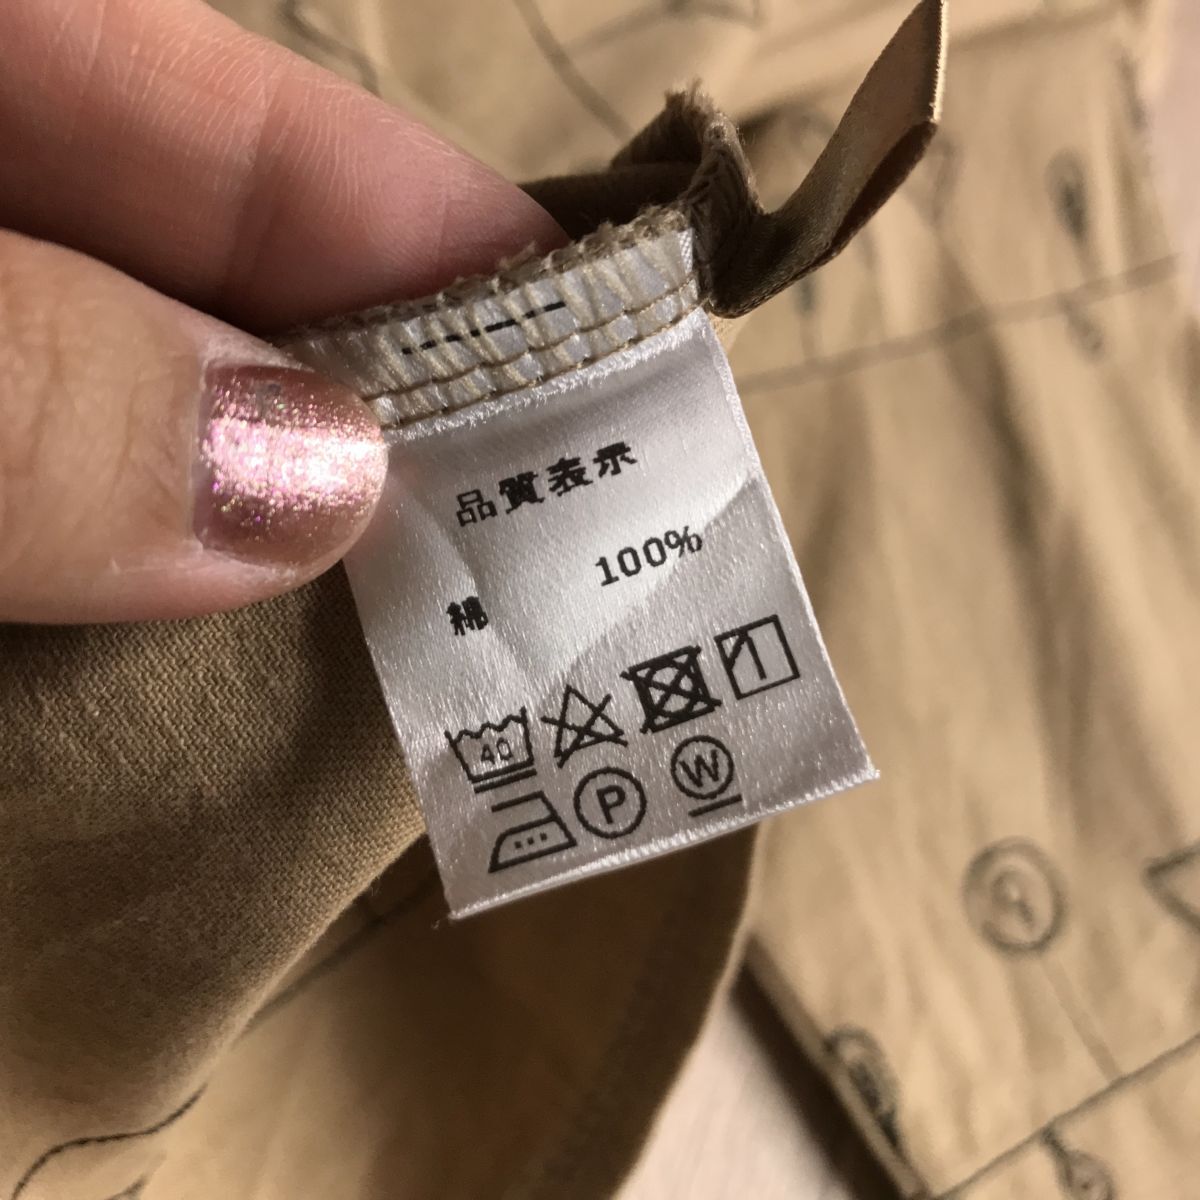 100 jpy start 0 stylish design stitch lamp pattern blouse 